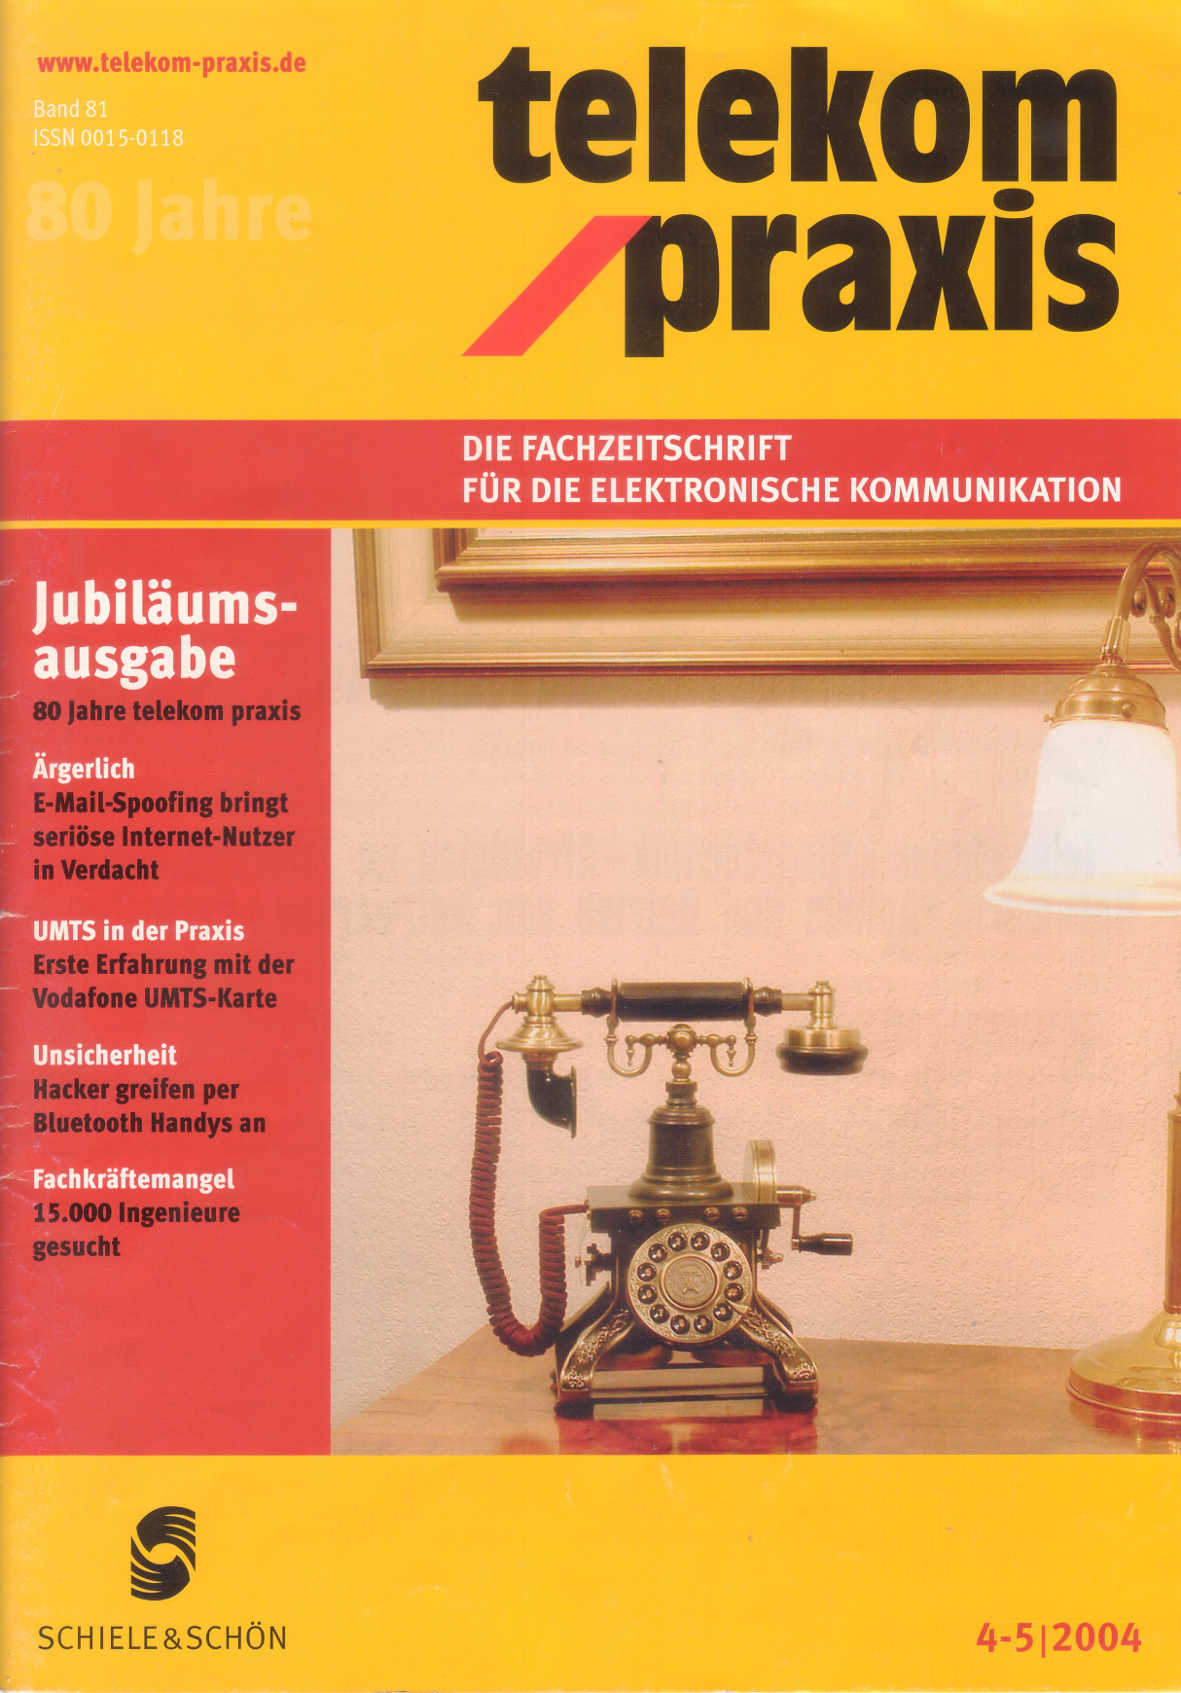 telekom praxis, Ausgabe 4/5-2004, Verlag Schiele und Schön, Berlin, ISSN: 0015-0118